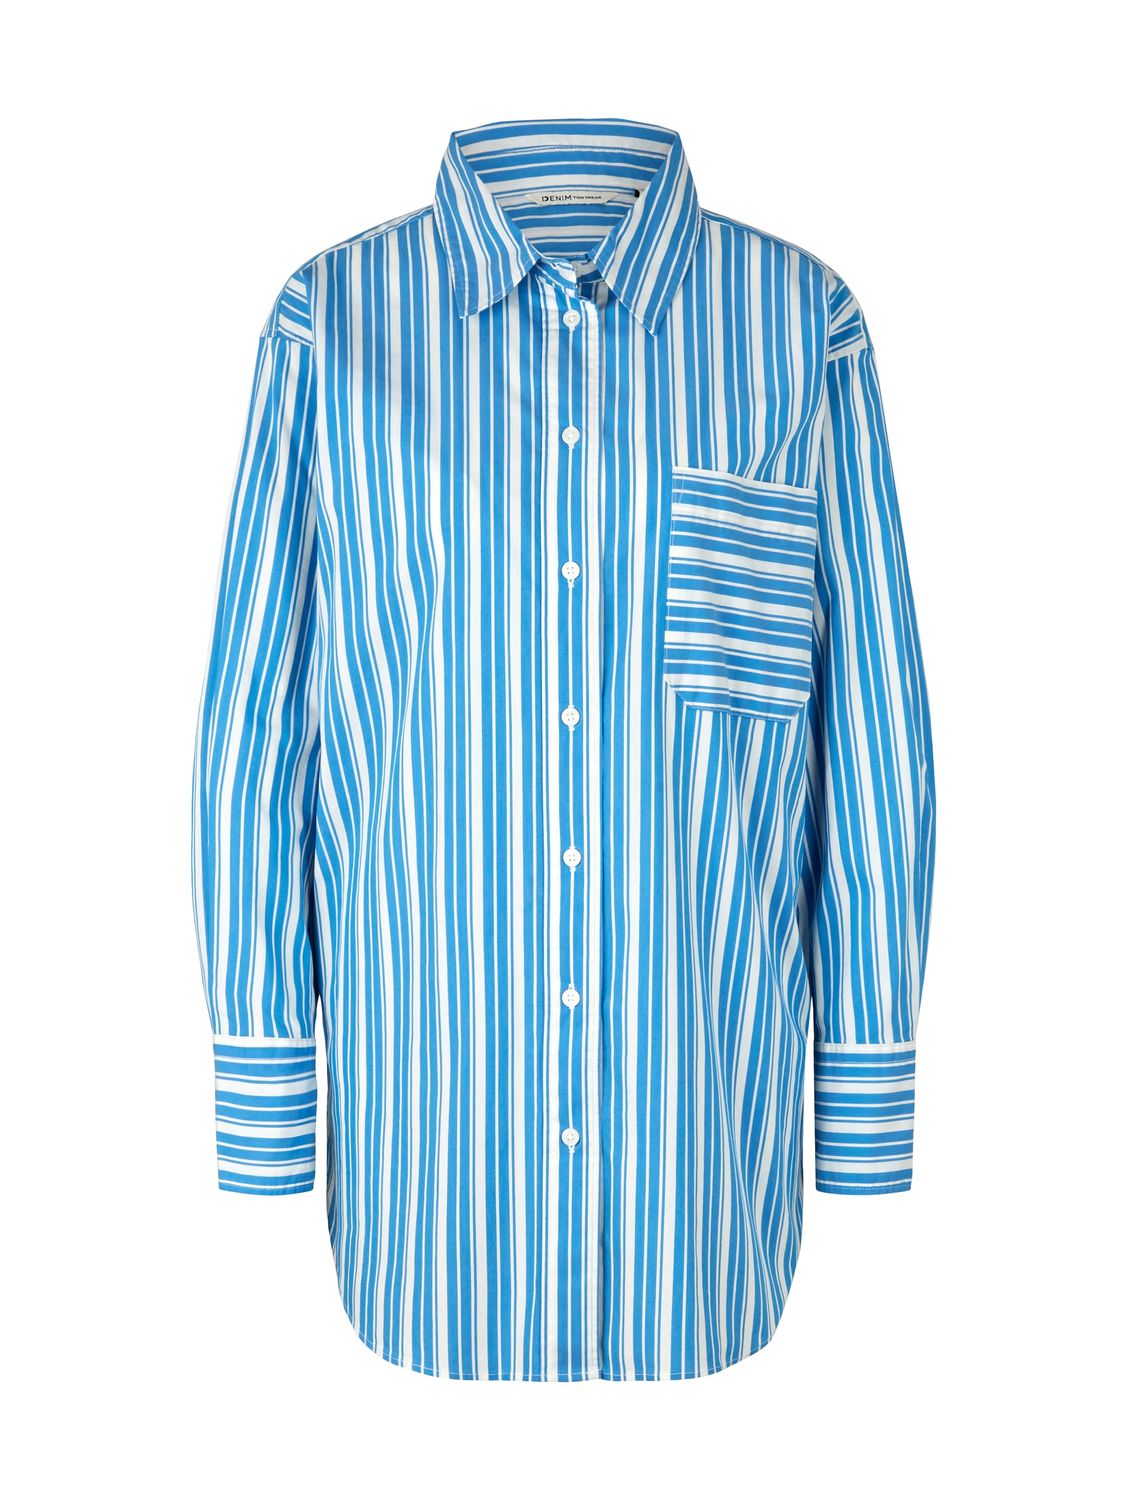 Блуза TOM TAILOR Denim CHEST POCKET, синий толстовка tom tailor средней длины капюшон карманы размер 152 синий